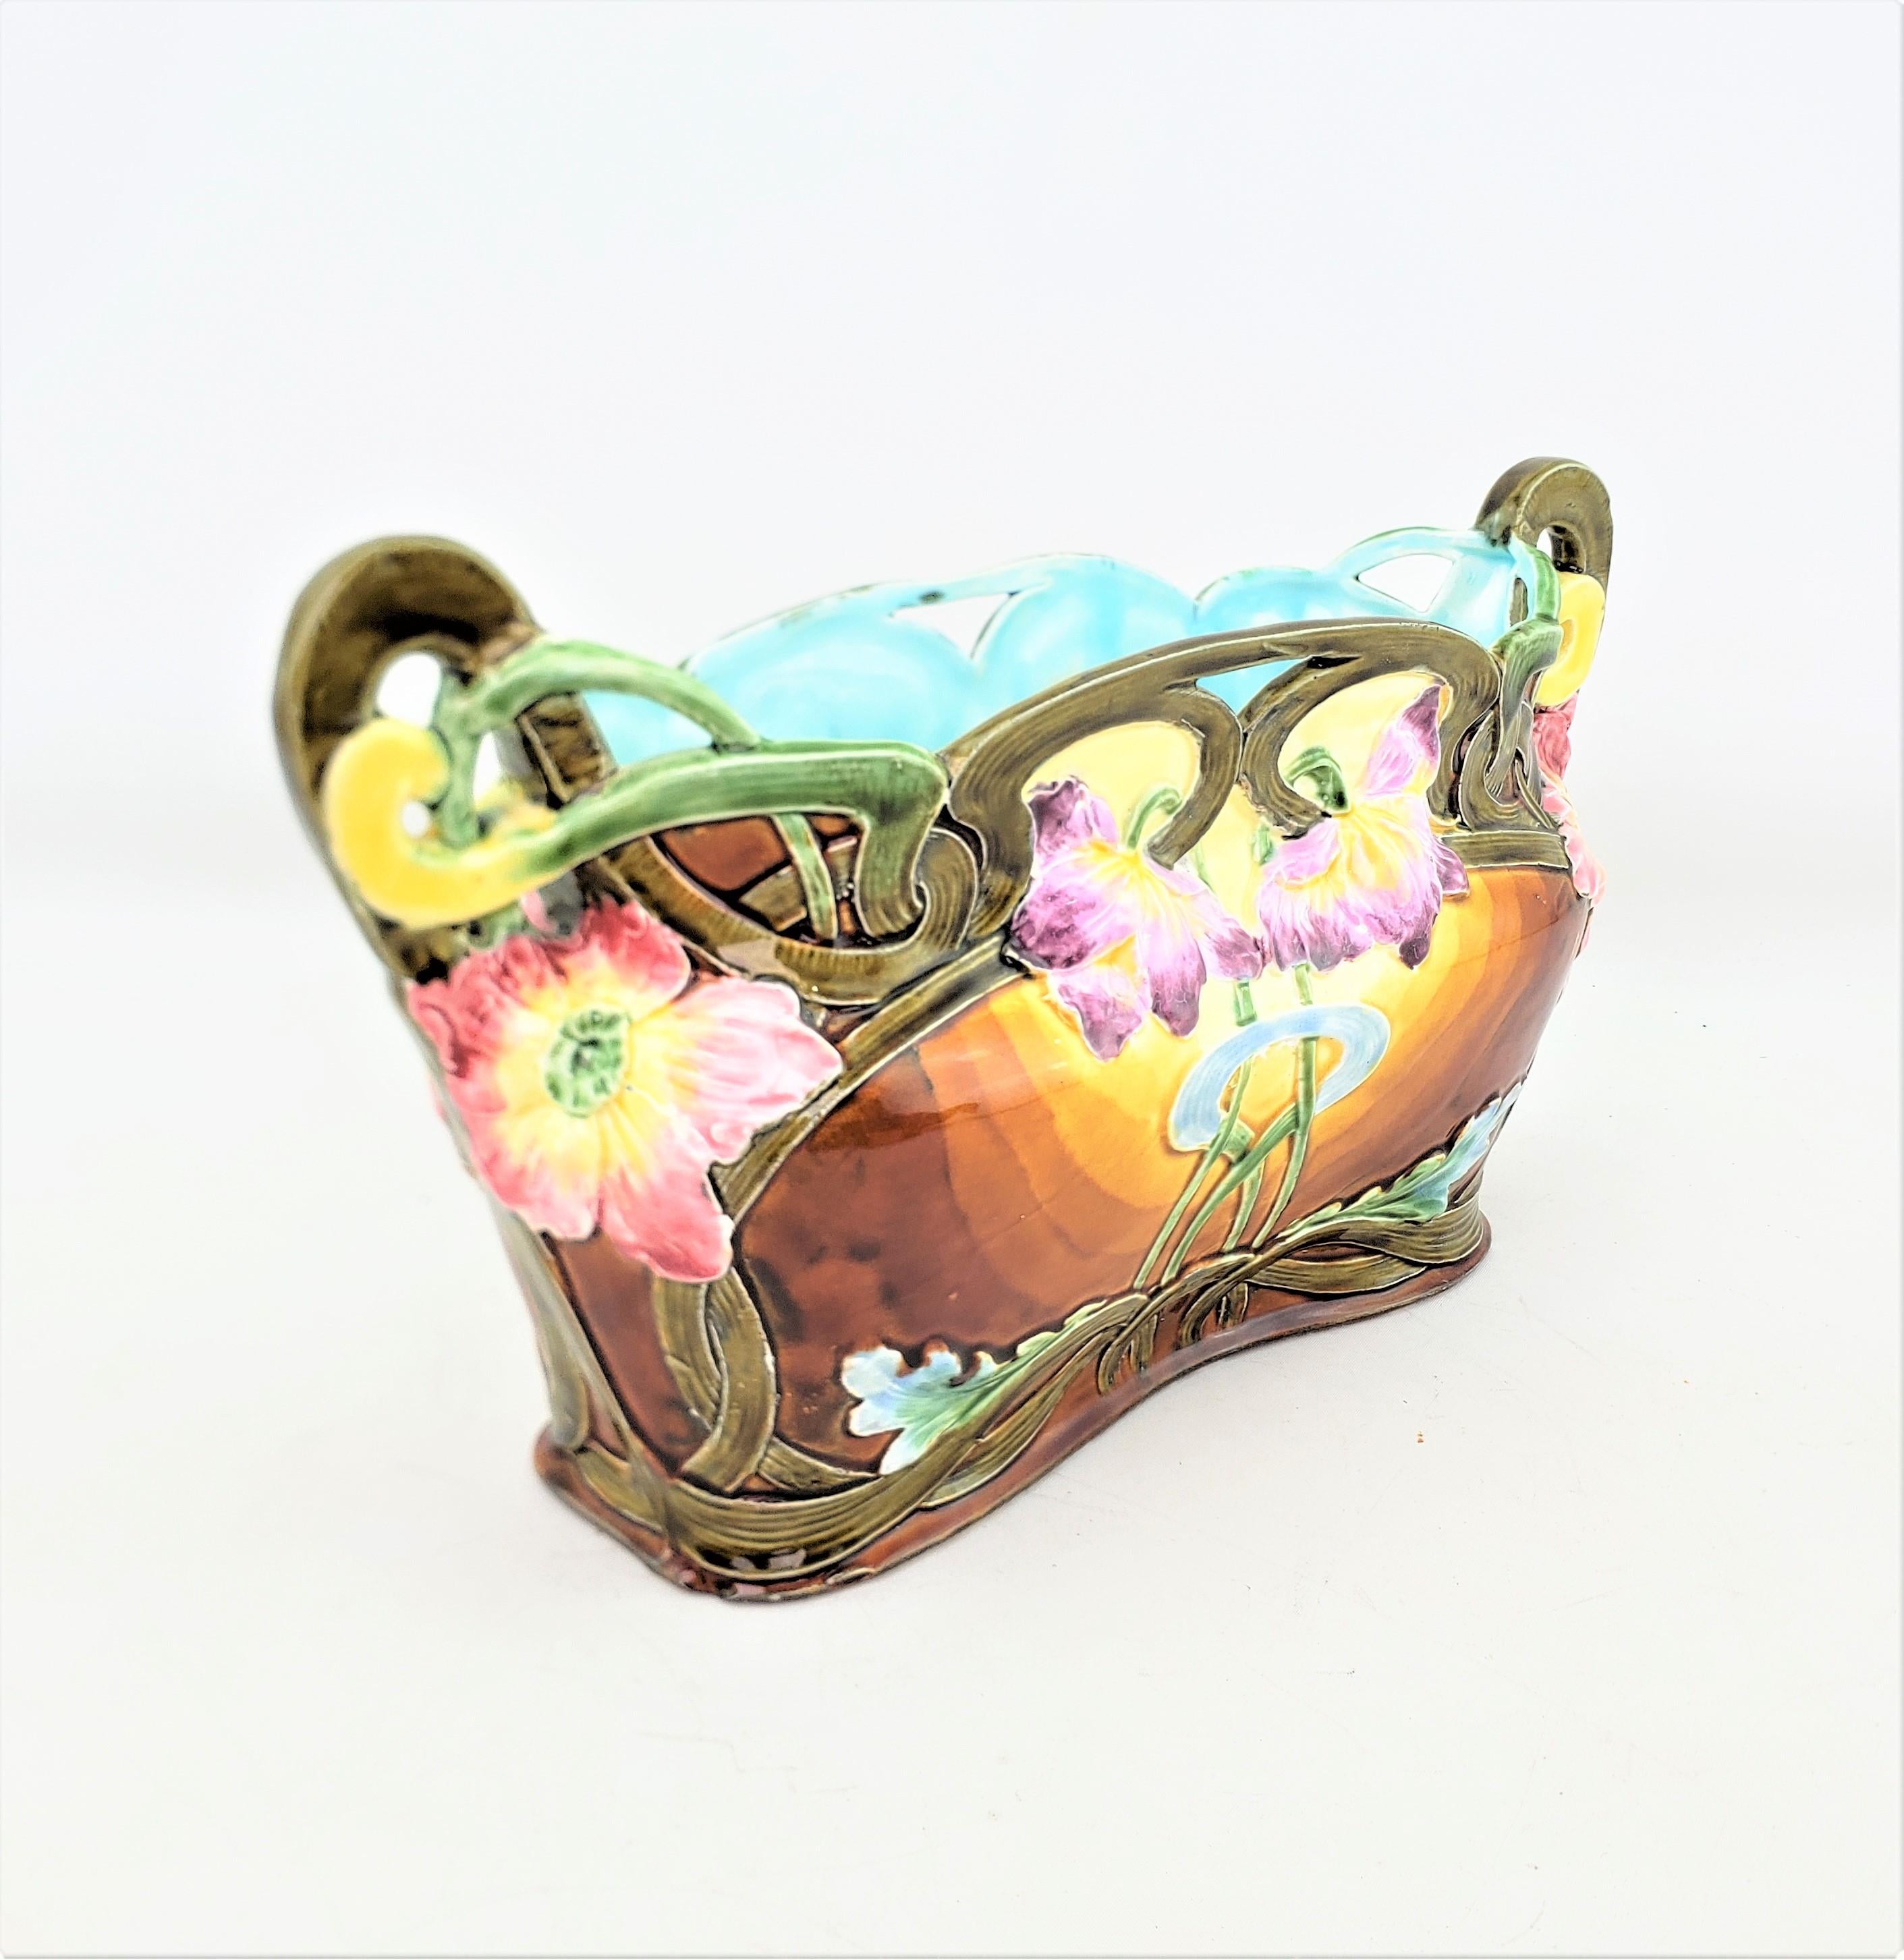 Dieses antike Pflanzgefäß ist unsigniert, stammt aber vermutlich aus England und wurde um 1890 im Jugendstil gefertigt. Das Pflanzgefäß besteht aus Majolika und hat die Form eines figuralen Blumenkorbs mit lebhaftem Blumendekor, der innen türkis